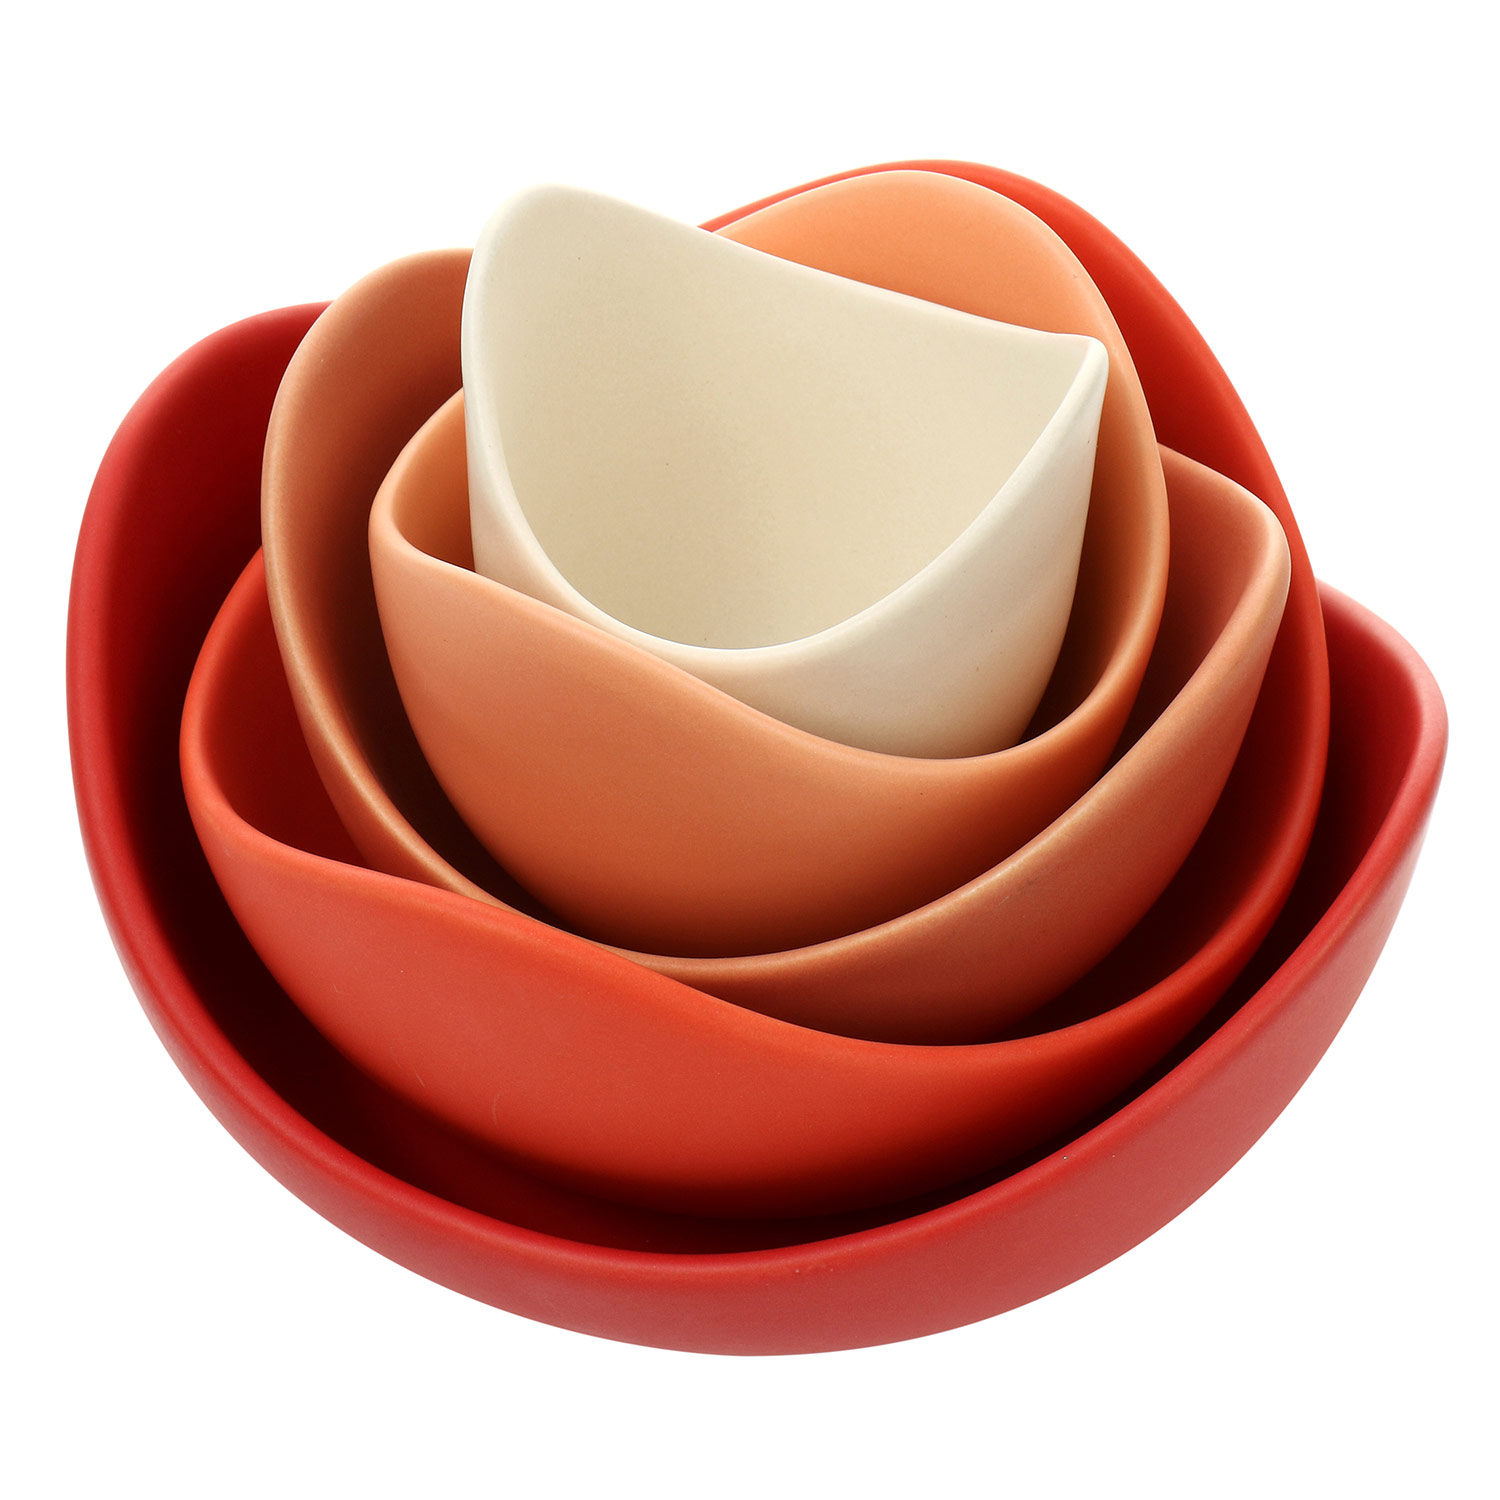 Orange red lotus bowl-5 piece set